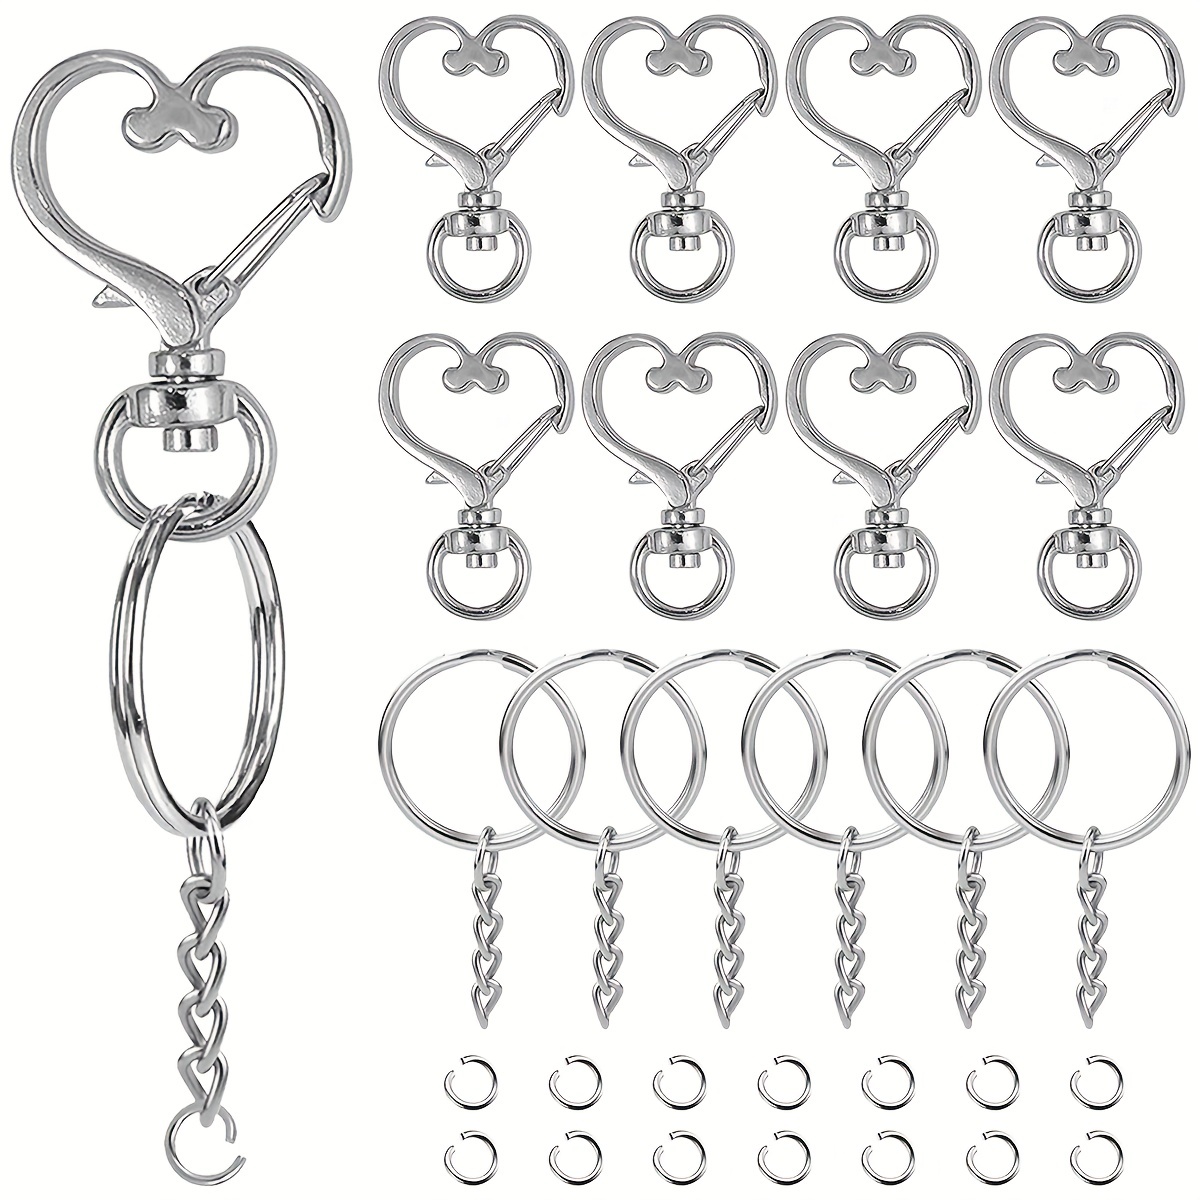 

150pcs Heart Shaped Keychain Swivel Snap Hook Set Metal Silvery Keychain Lobster Clasp Split Key Ring